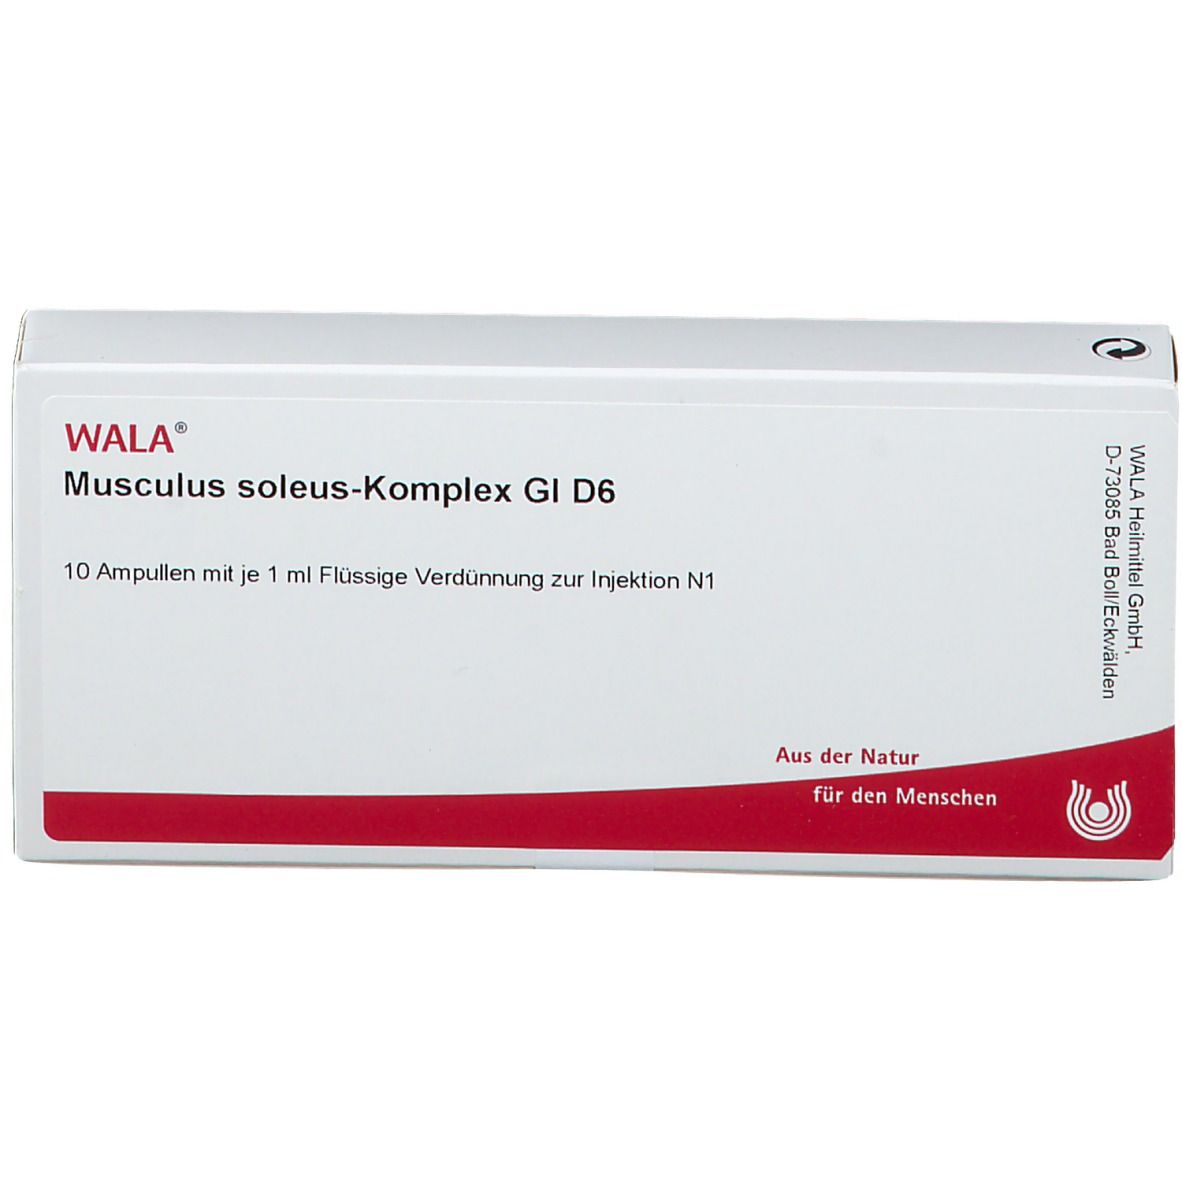 WALA® Musculus soleus-Komplex Gl D 6